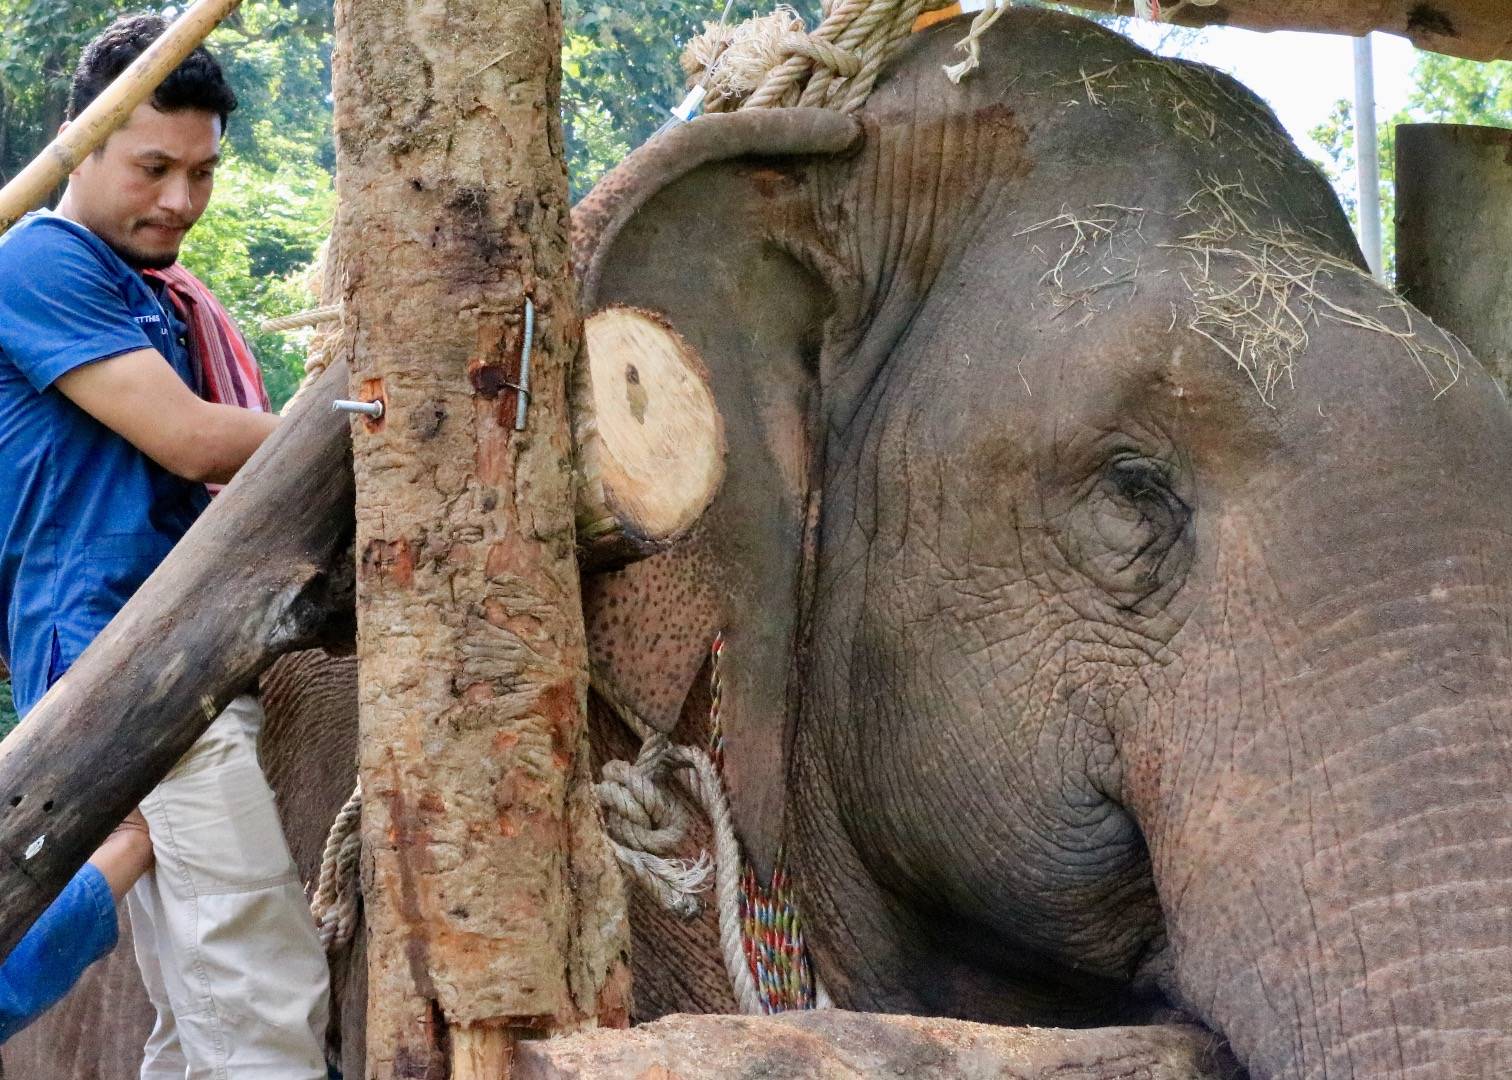 เศร้า ”ช้างสีดอชมพู”ตายแล้ว หลังยื้อชีวิต 5 วัน